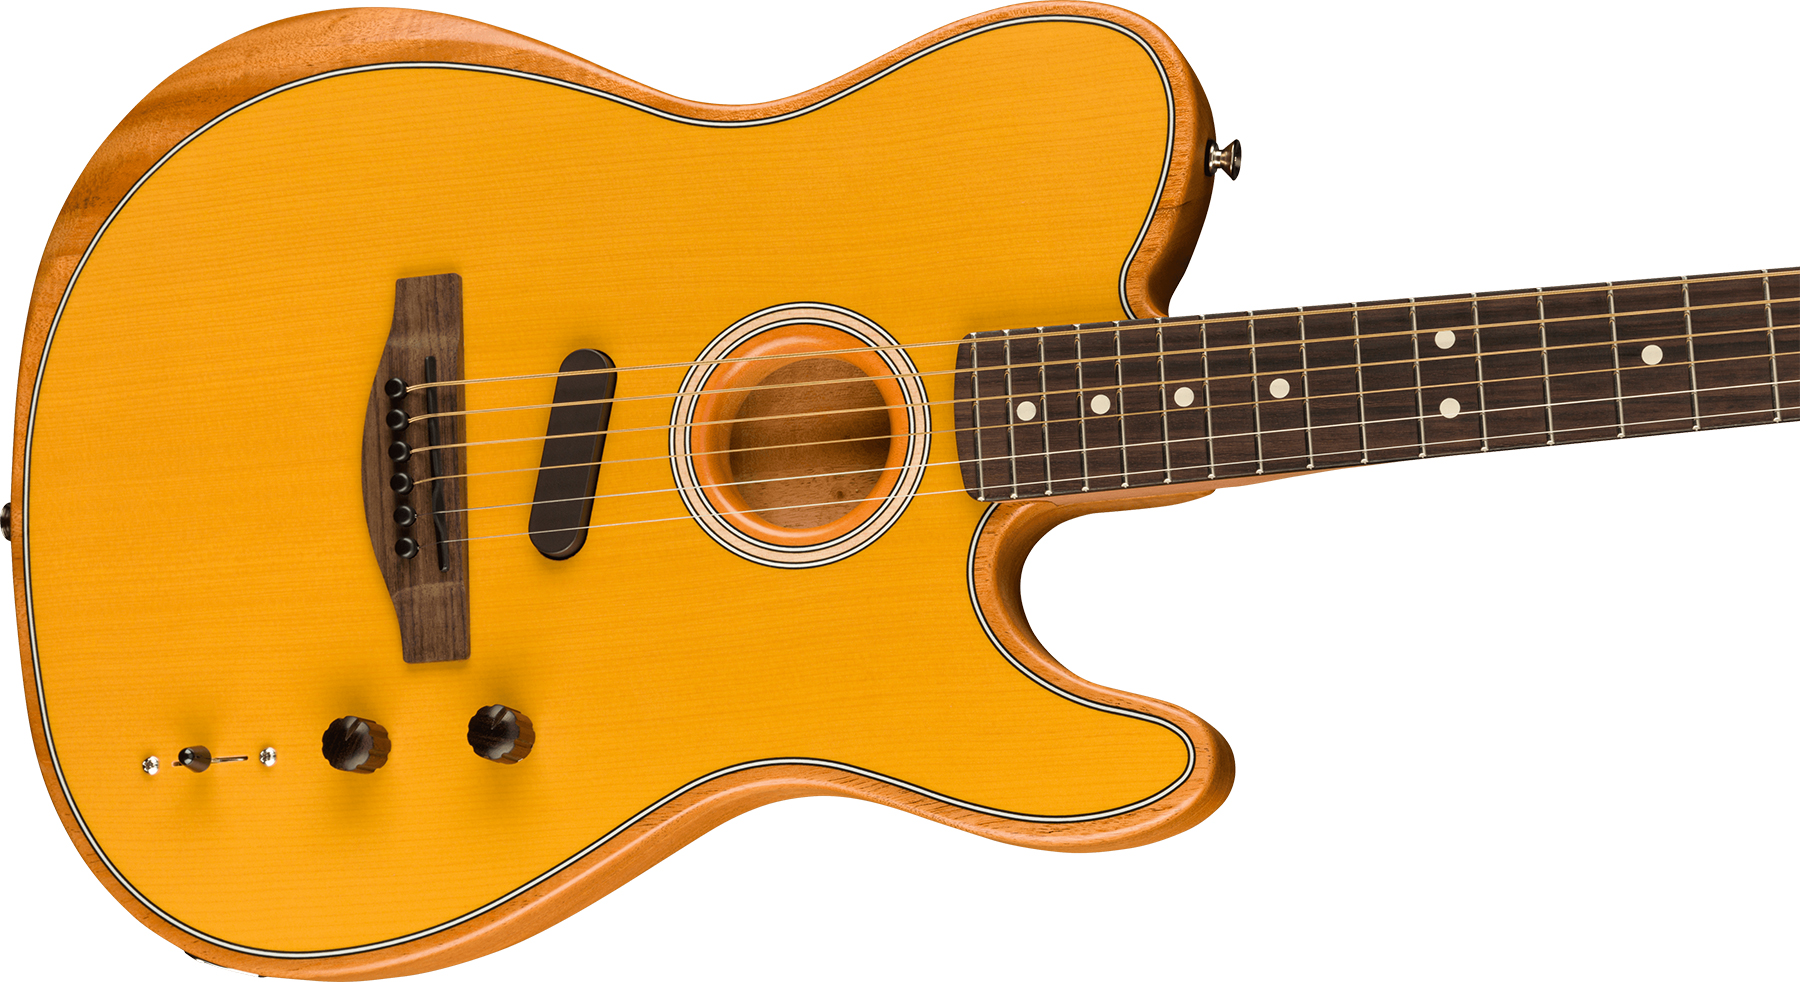 Fender Acoustasonic Tele Player Mex Epicea Acajou Rw - Butterscotch Blonde - Guitare Electro Acoustique - Variation 2